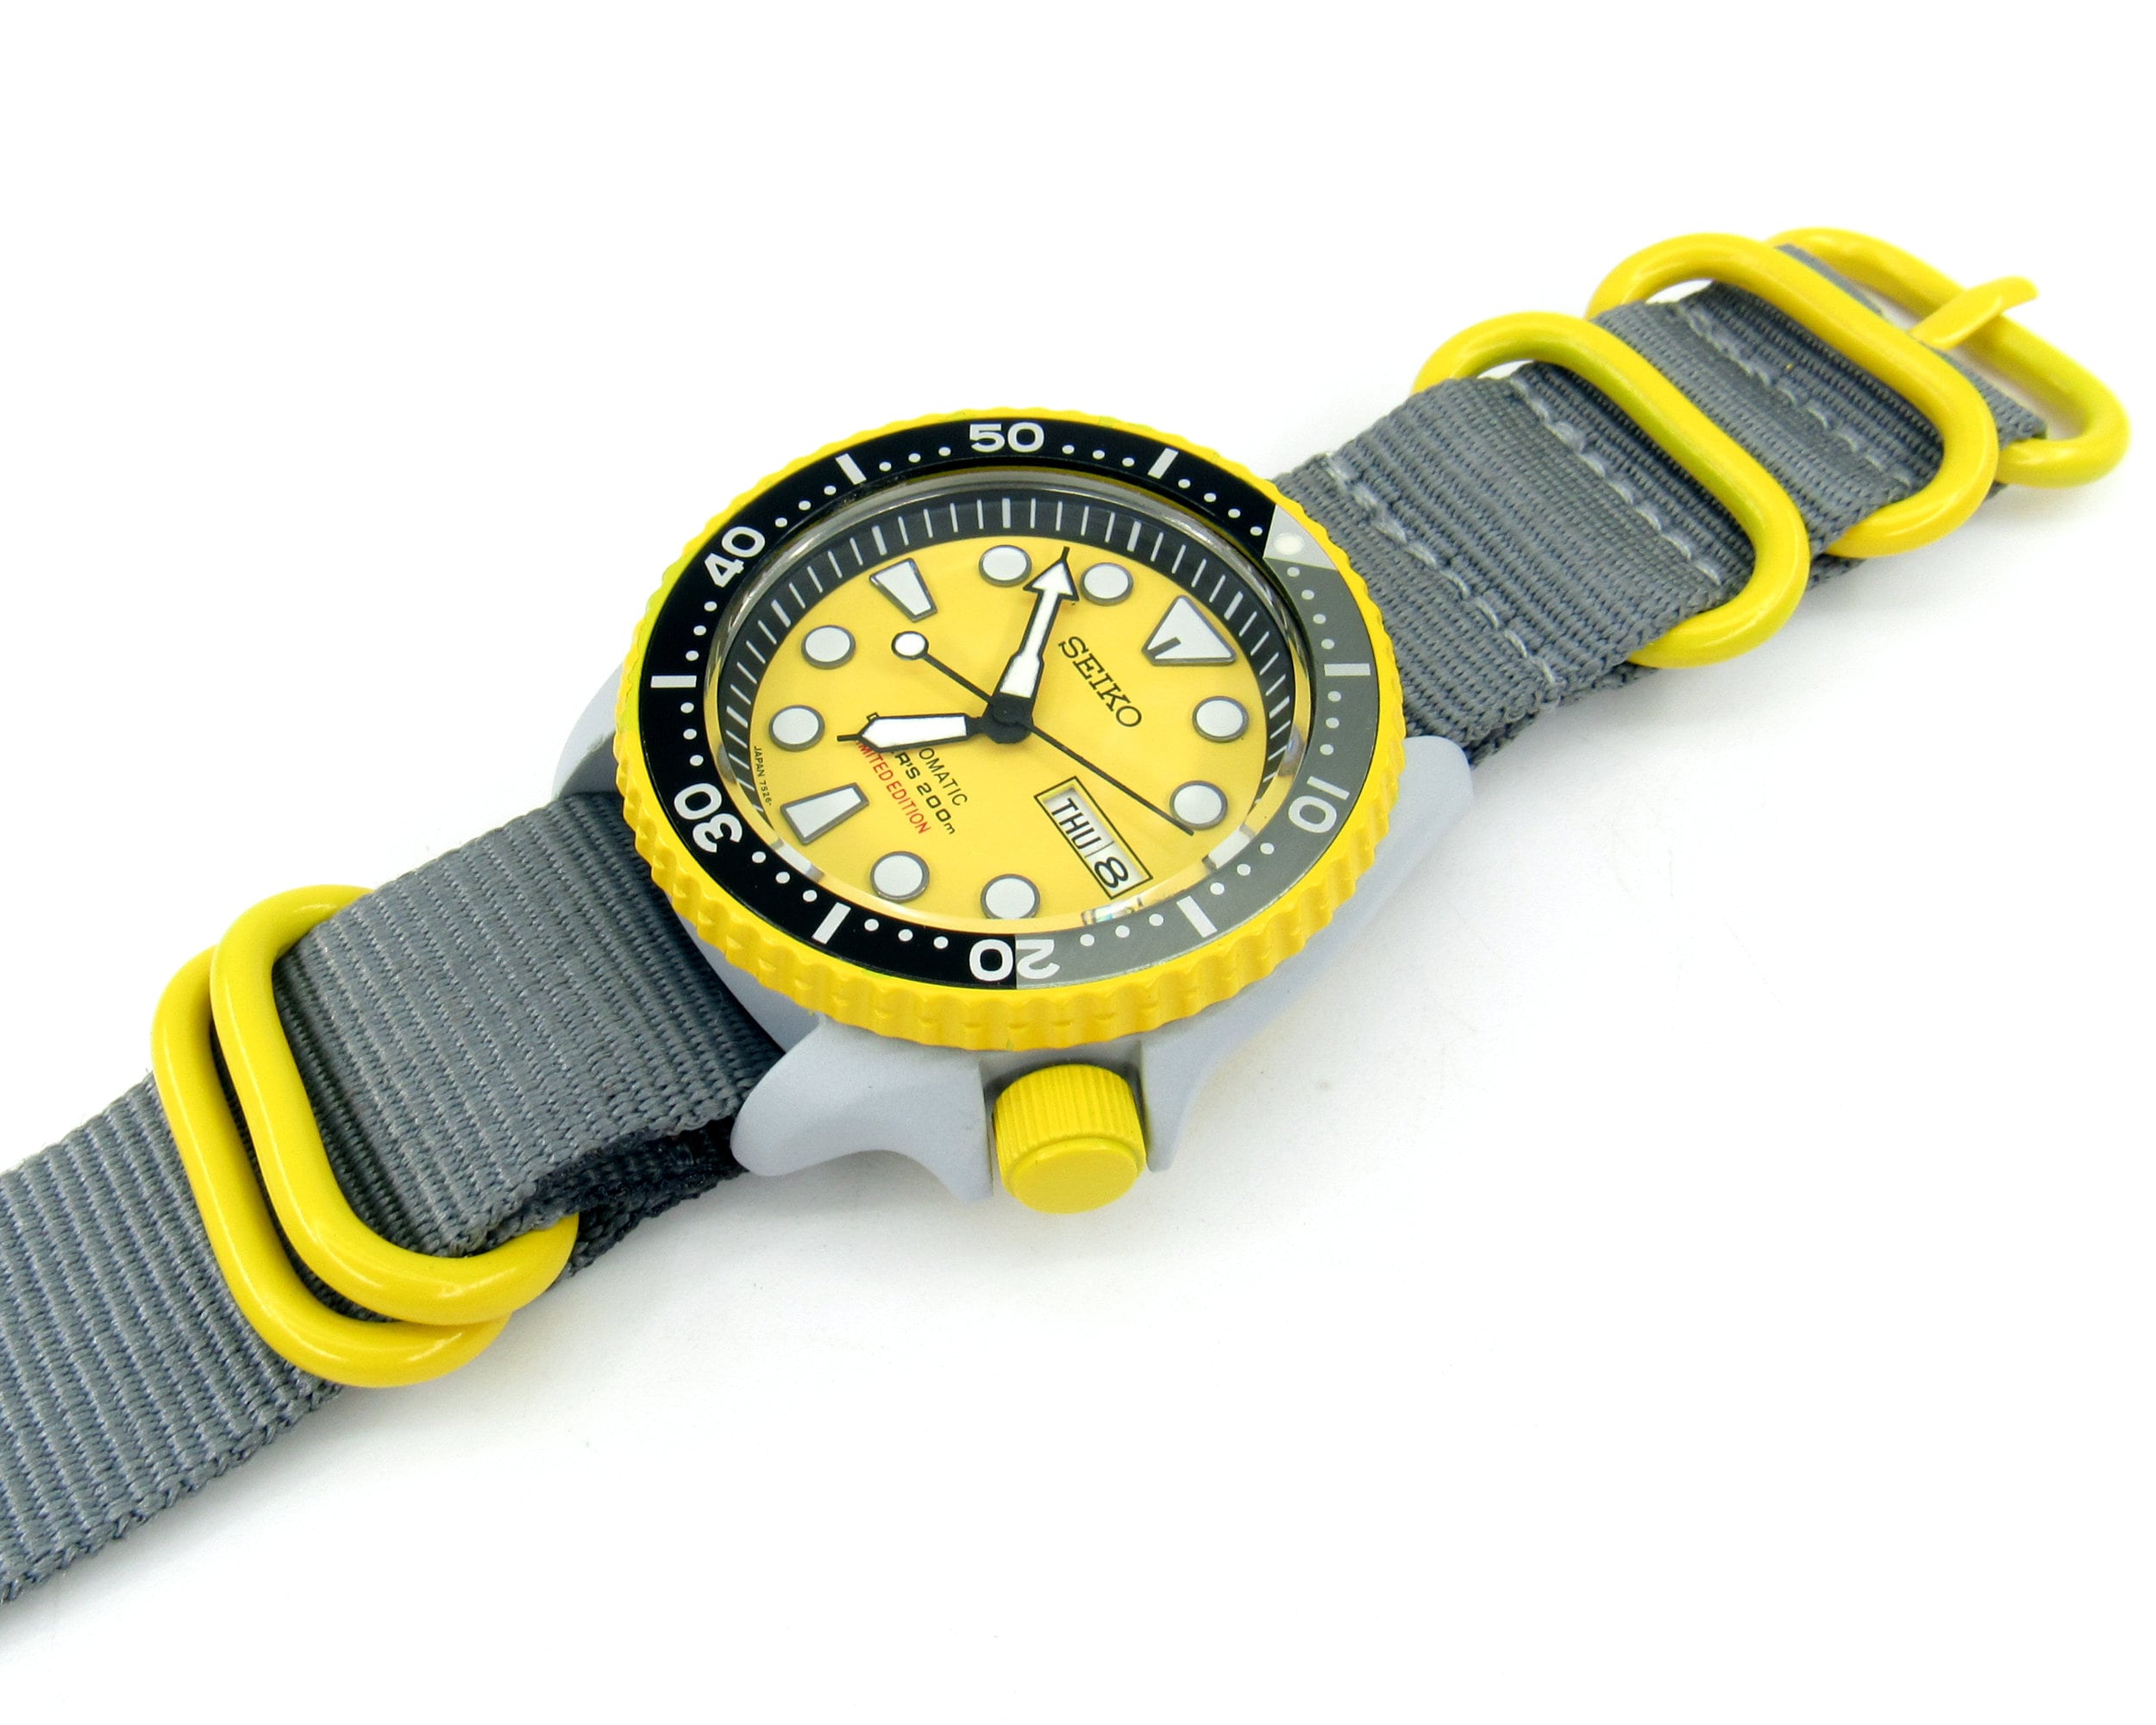 Seiko Skx007 Divers Men's Watch Seiko Mod Yellow Gray - Etsy